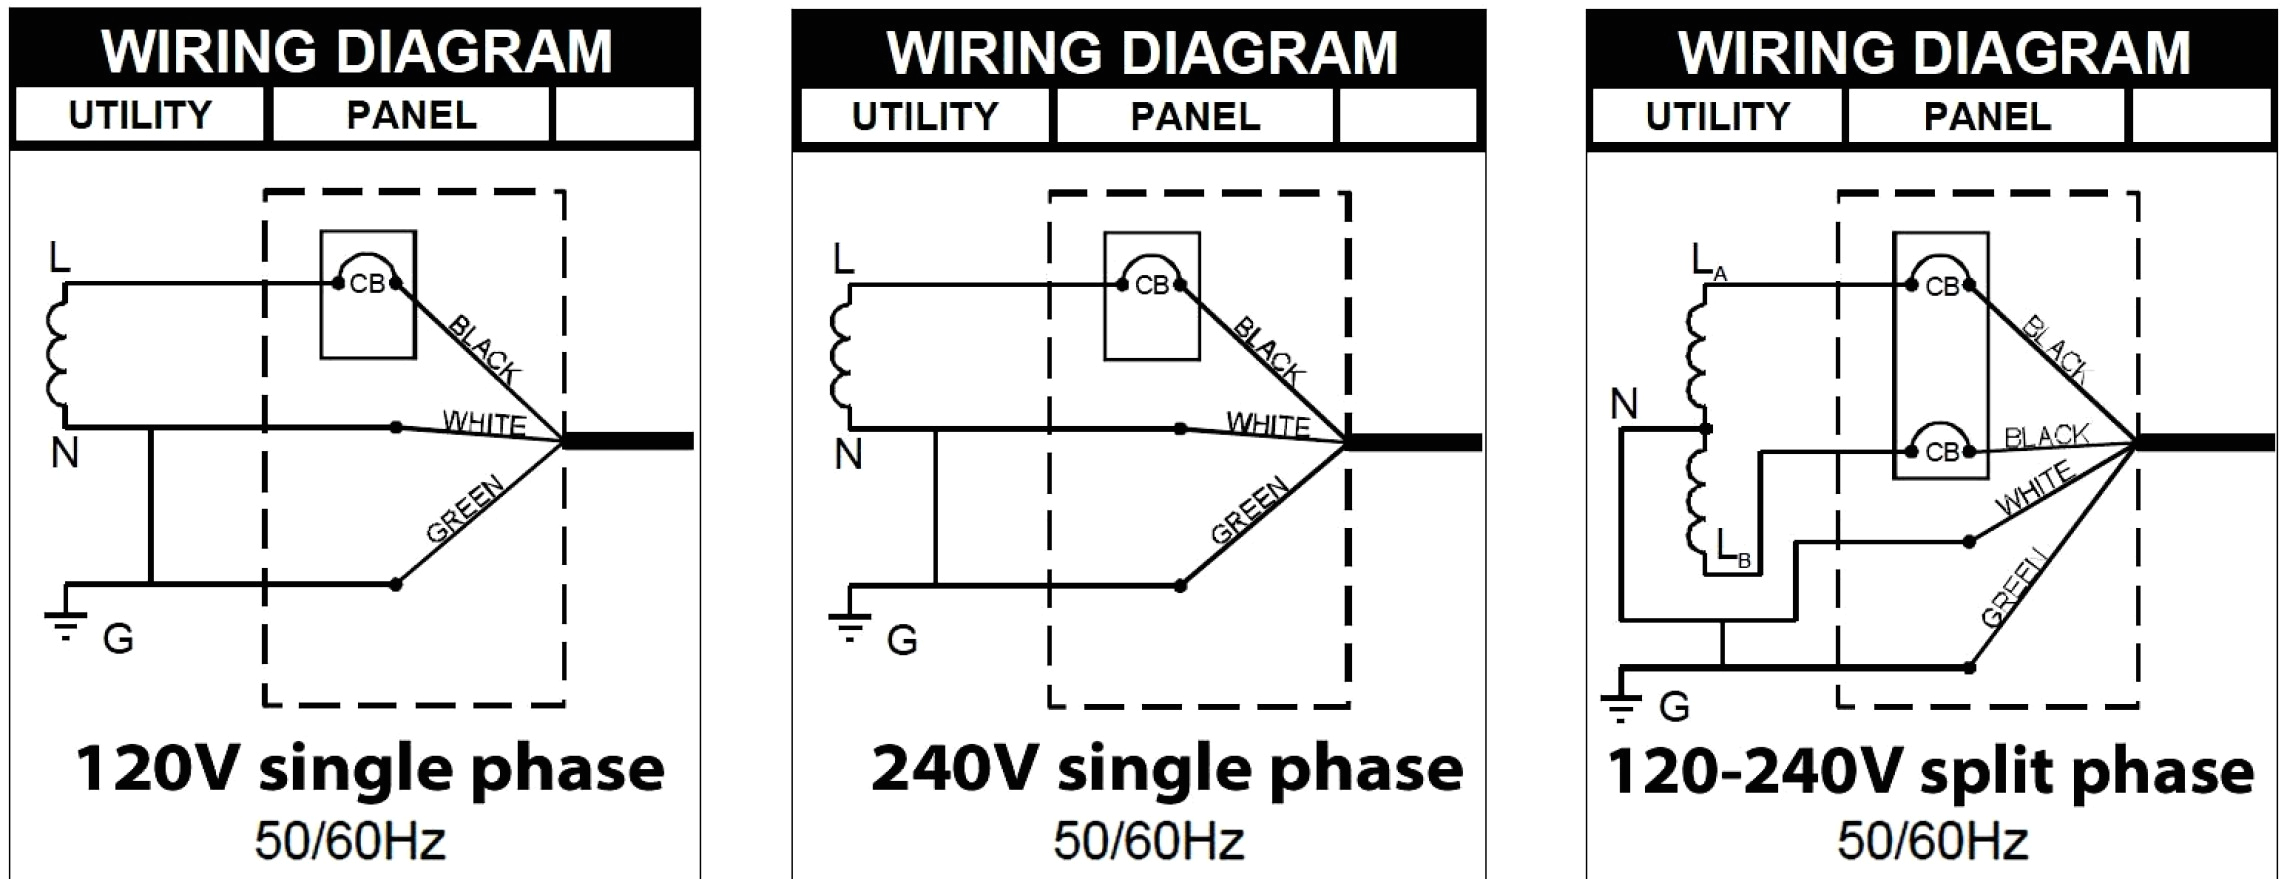 208 volt 3 phase diagram book diagram schema 120 208 volt 3 phase diagram 208 volt 3 phase diagram